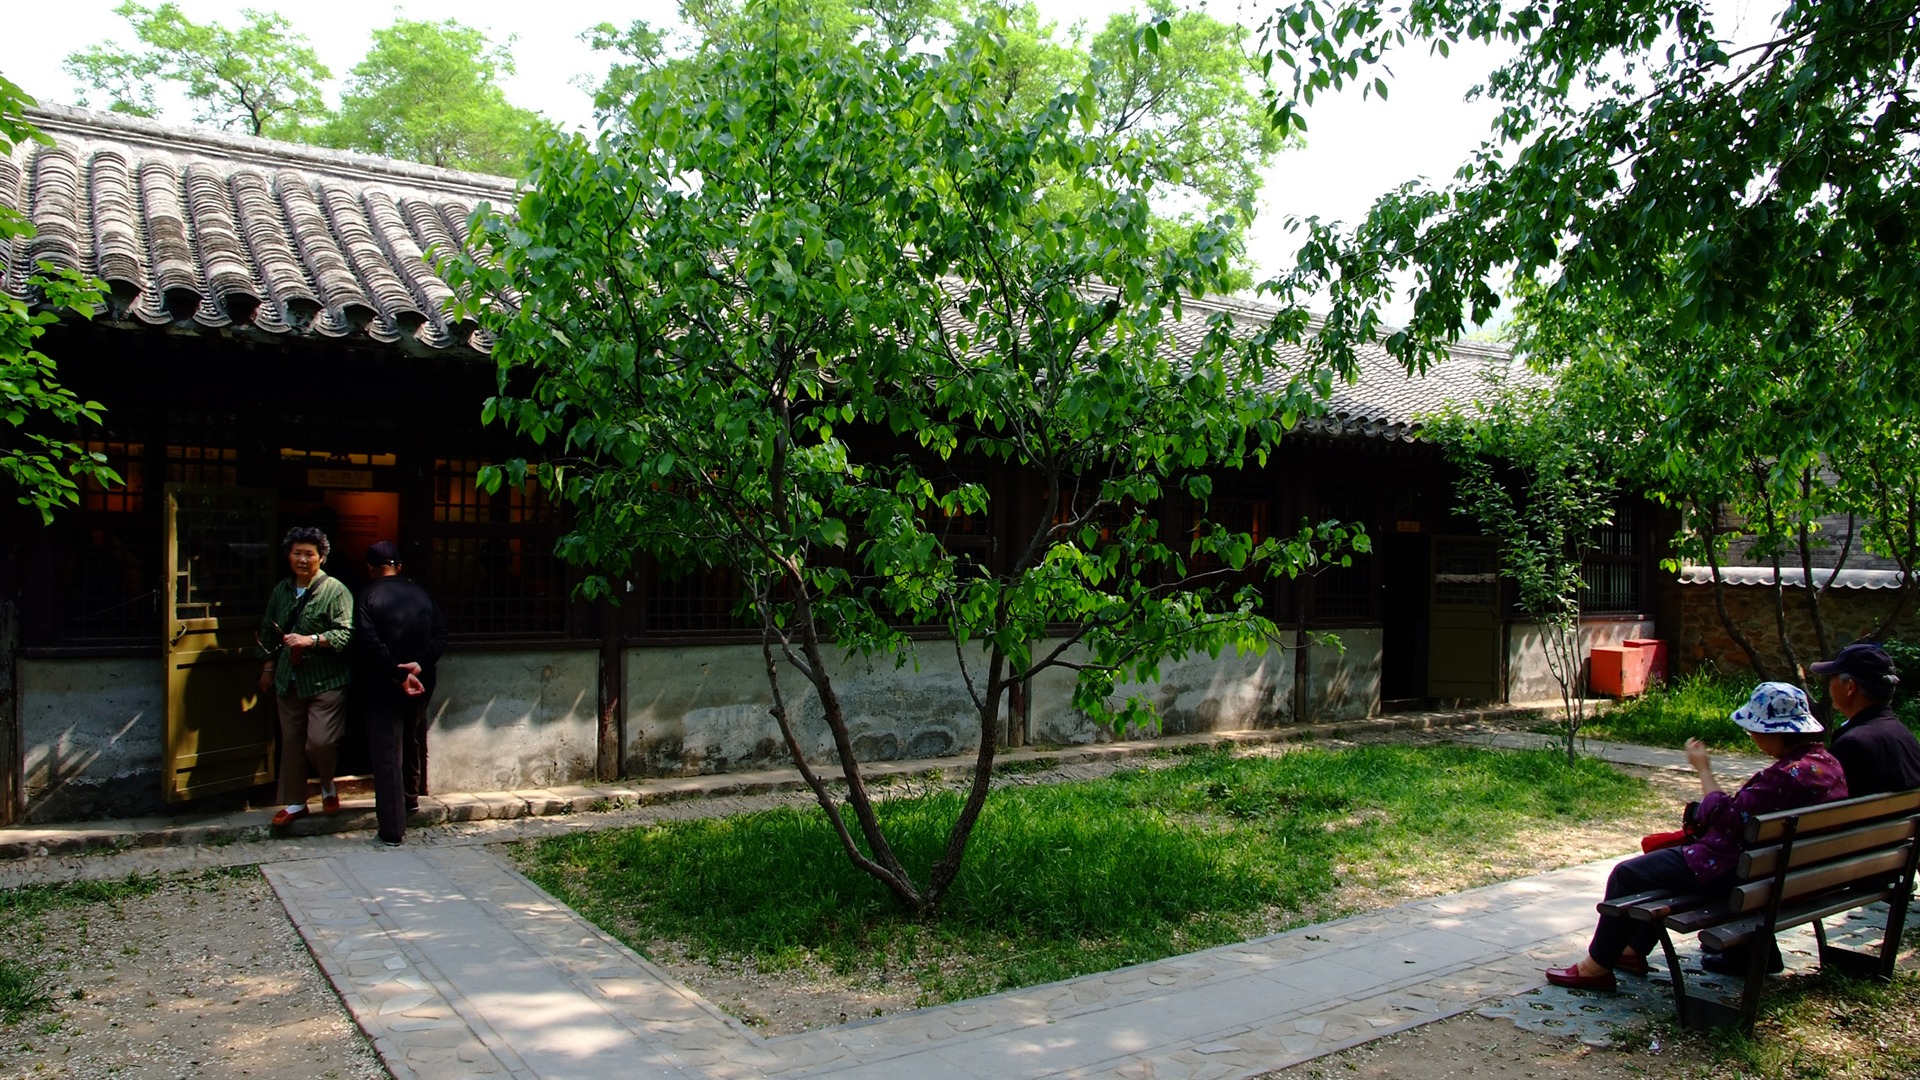 Xiangshan jardín principios del verano (obras barras de refuerzo) #18 - 1920x1080